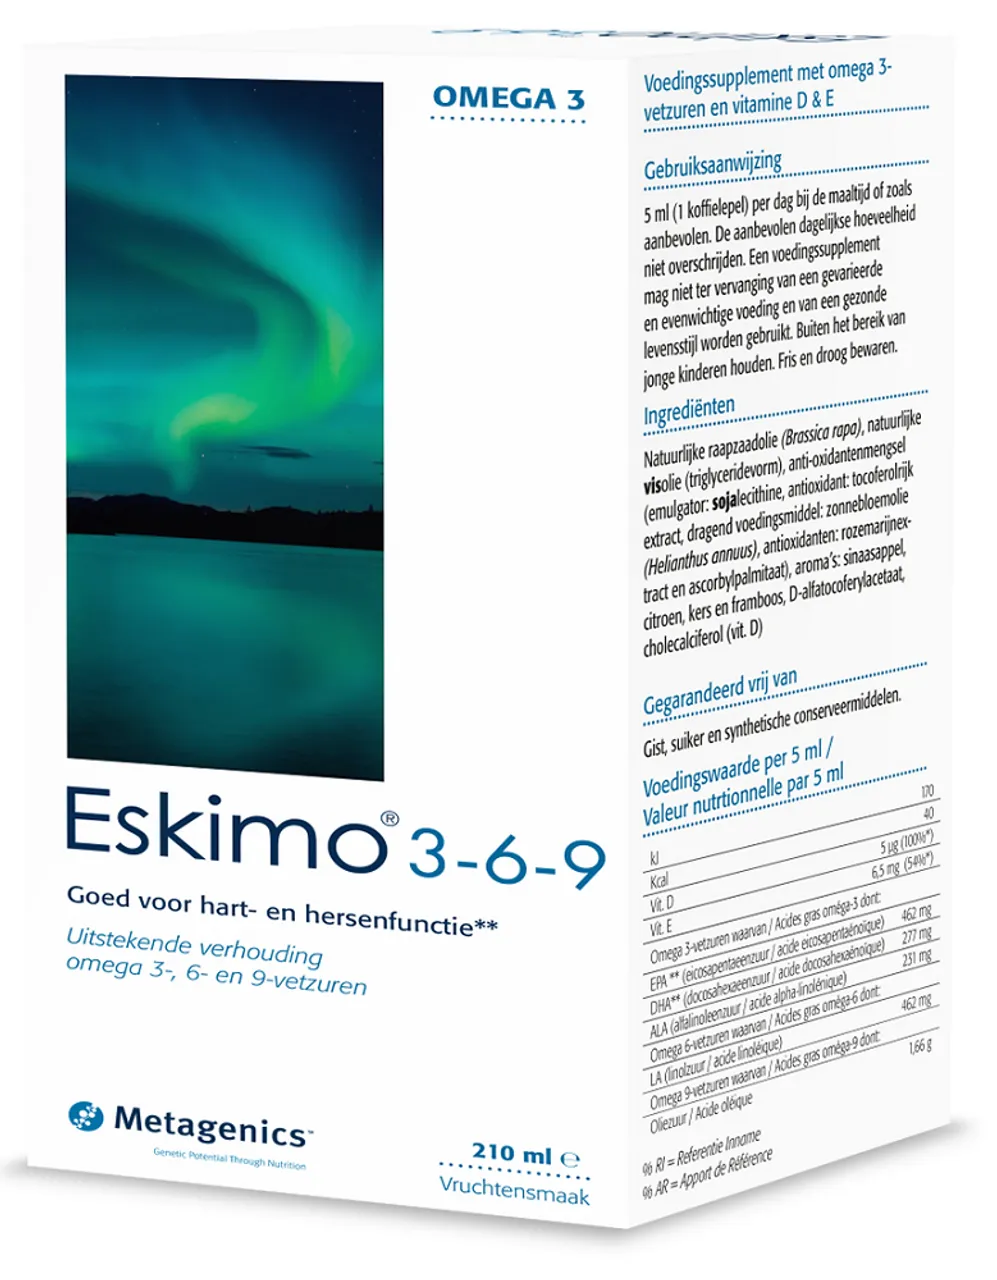 Metagenics Eskimo 3-6-9 Vloeibaar